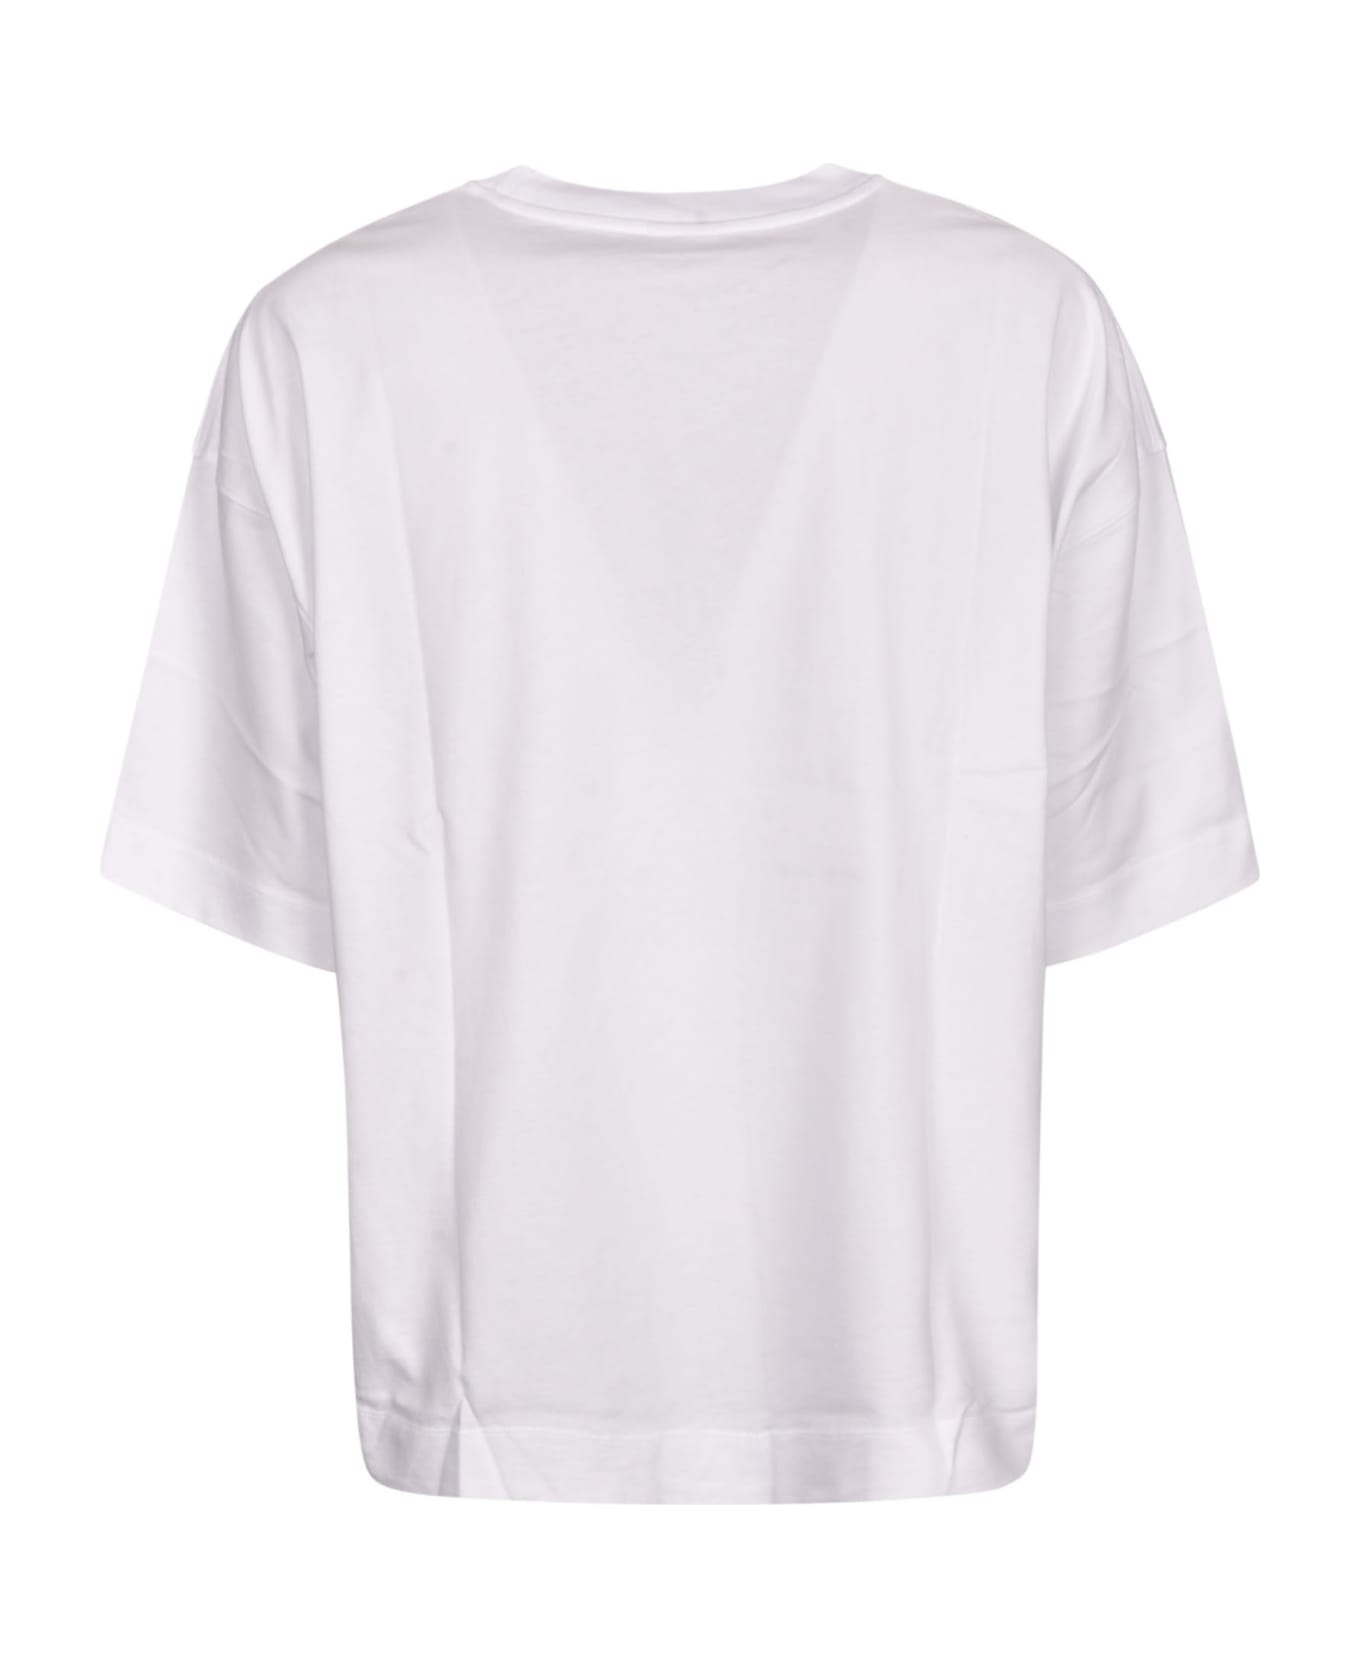 Dries Van Noten Round Neck T-shirt - White シャツ